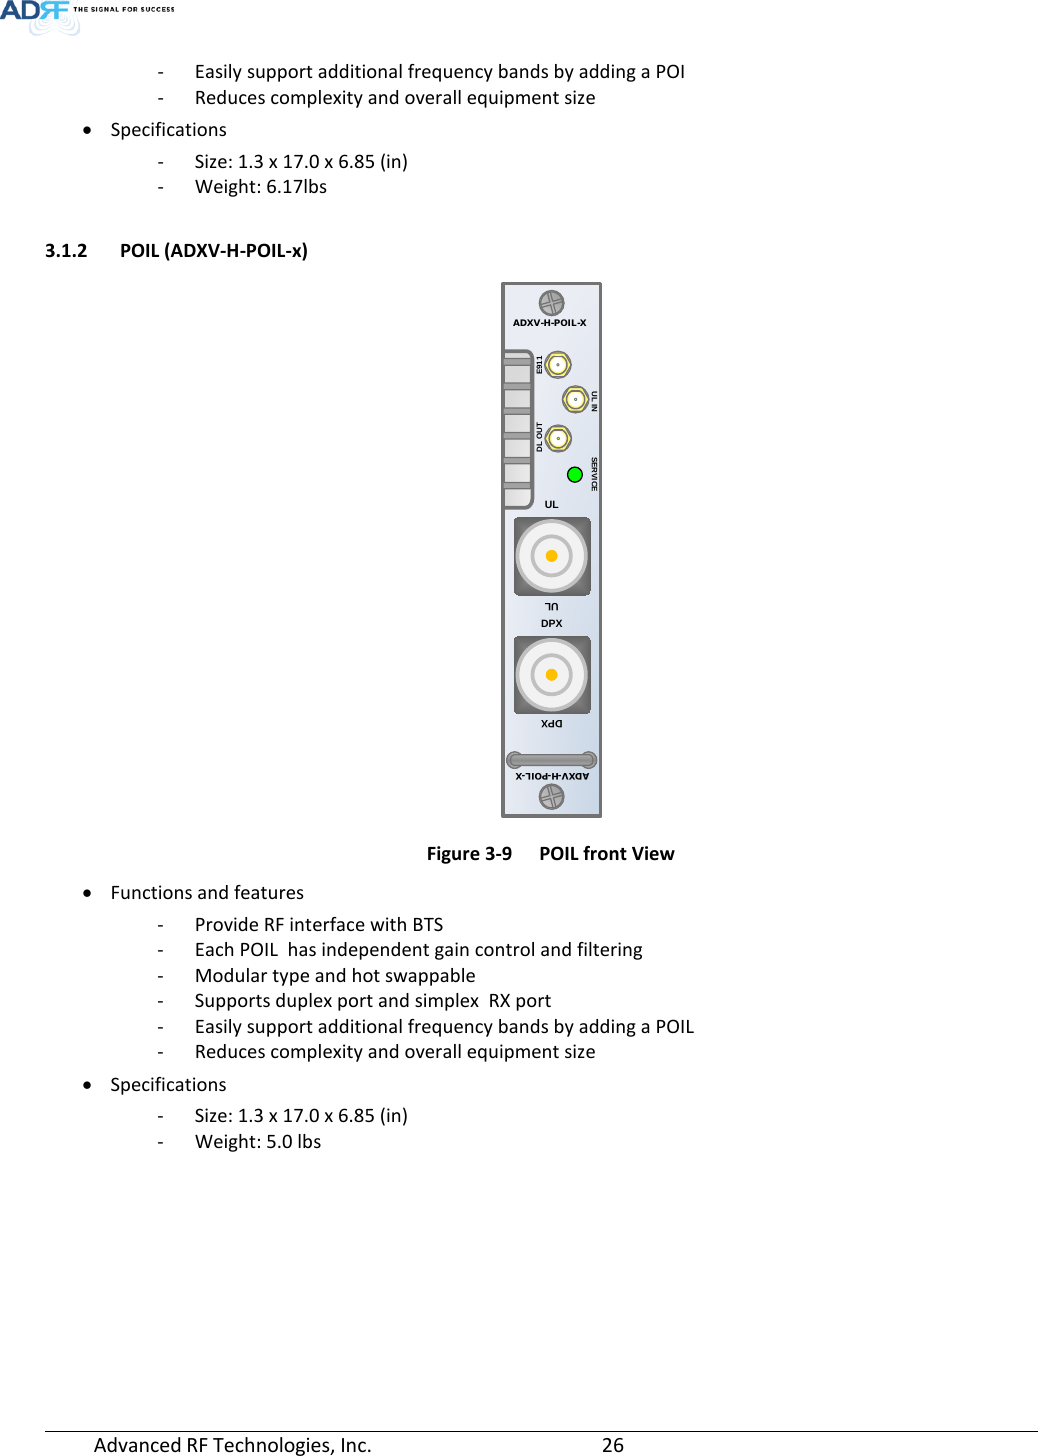 Page 26 of ADRF KOREA ADXV-R-25VUNA DAS (Distributed Antenna System) User Manual ADXV DAS